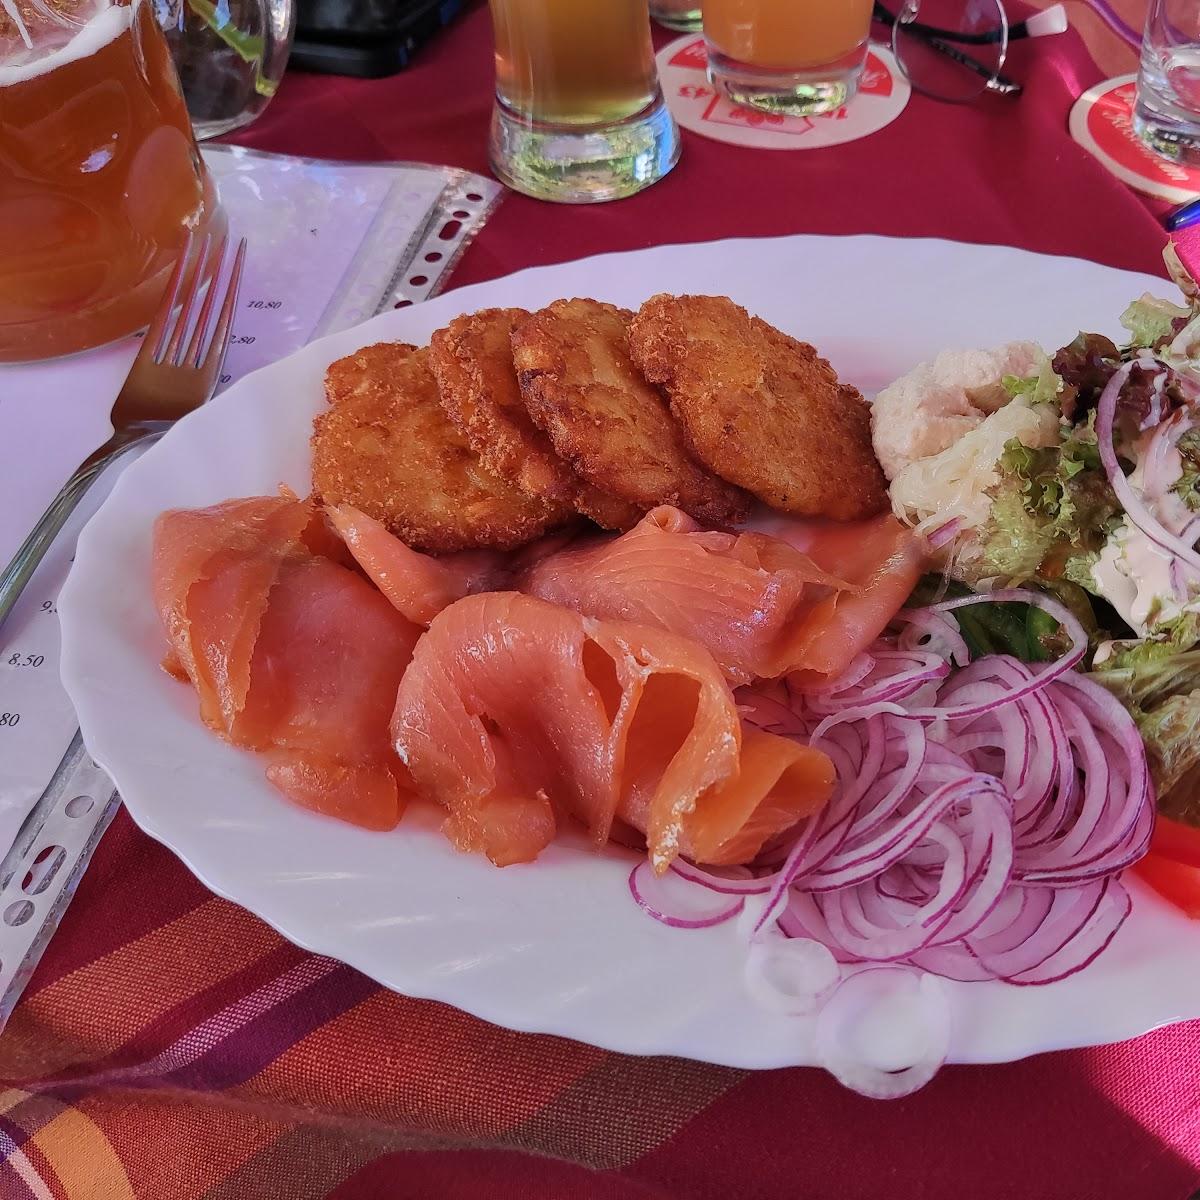 Restaurant "Gaststätte Lindenwirt" in Bad Feilnbach